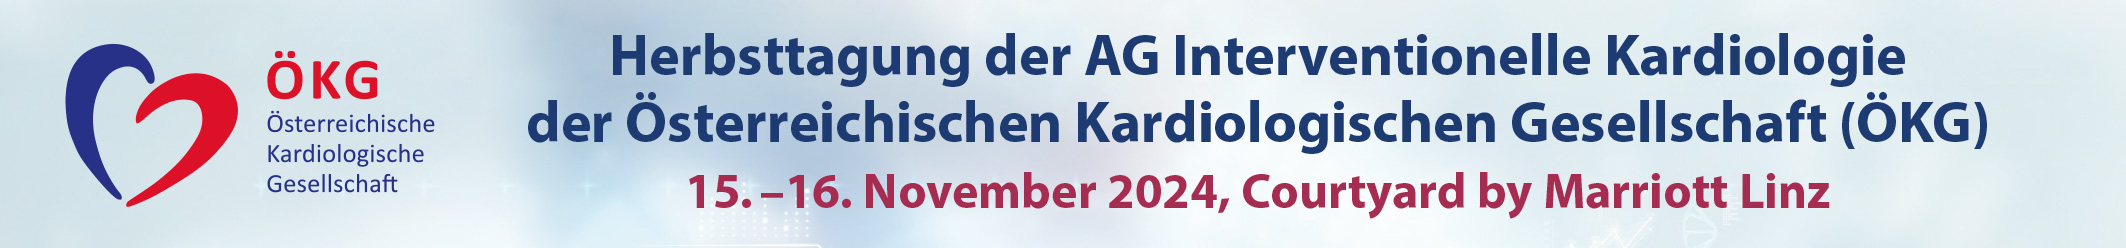 Herbsttagung der AG Interventionelle Kardiologie der ÖKG